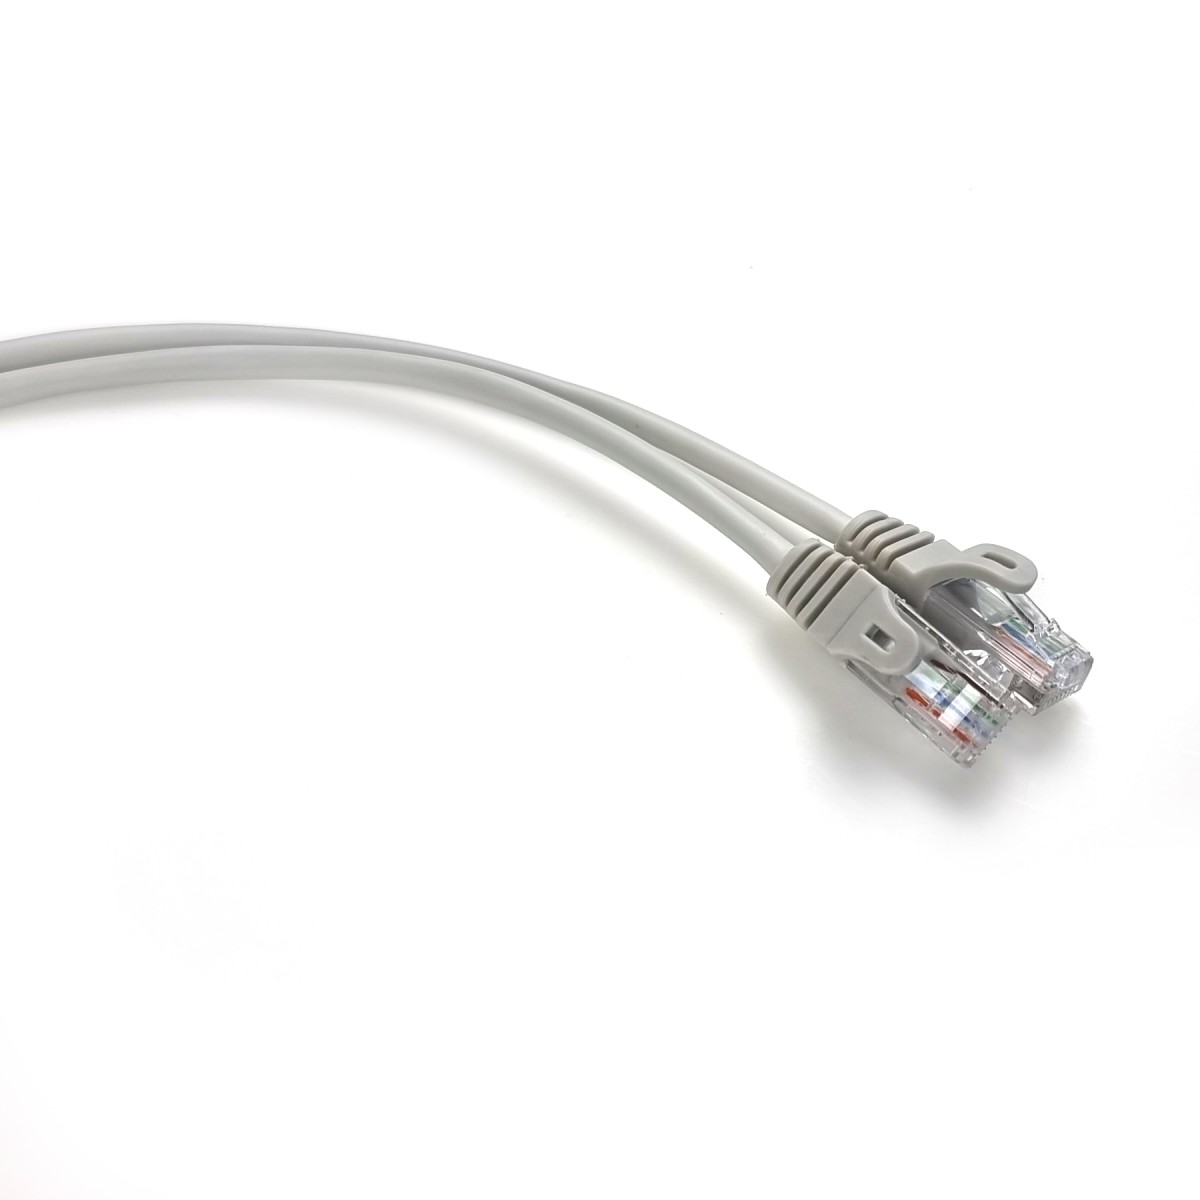 Інтернет кабель 1,5м UTP литий сірий RJ45 кат. 5е 98_98.jpg - фото 1